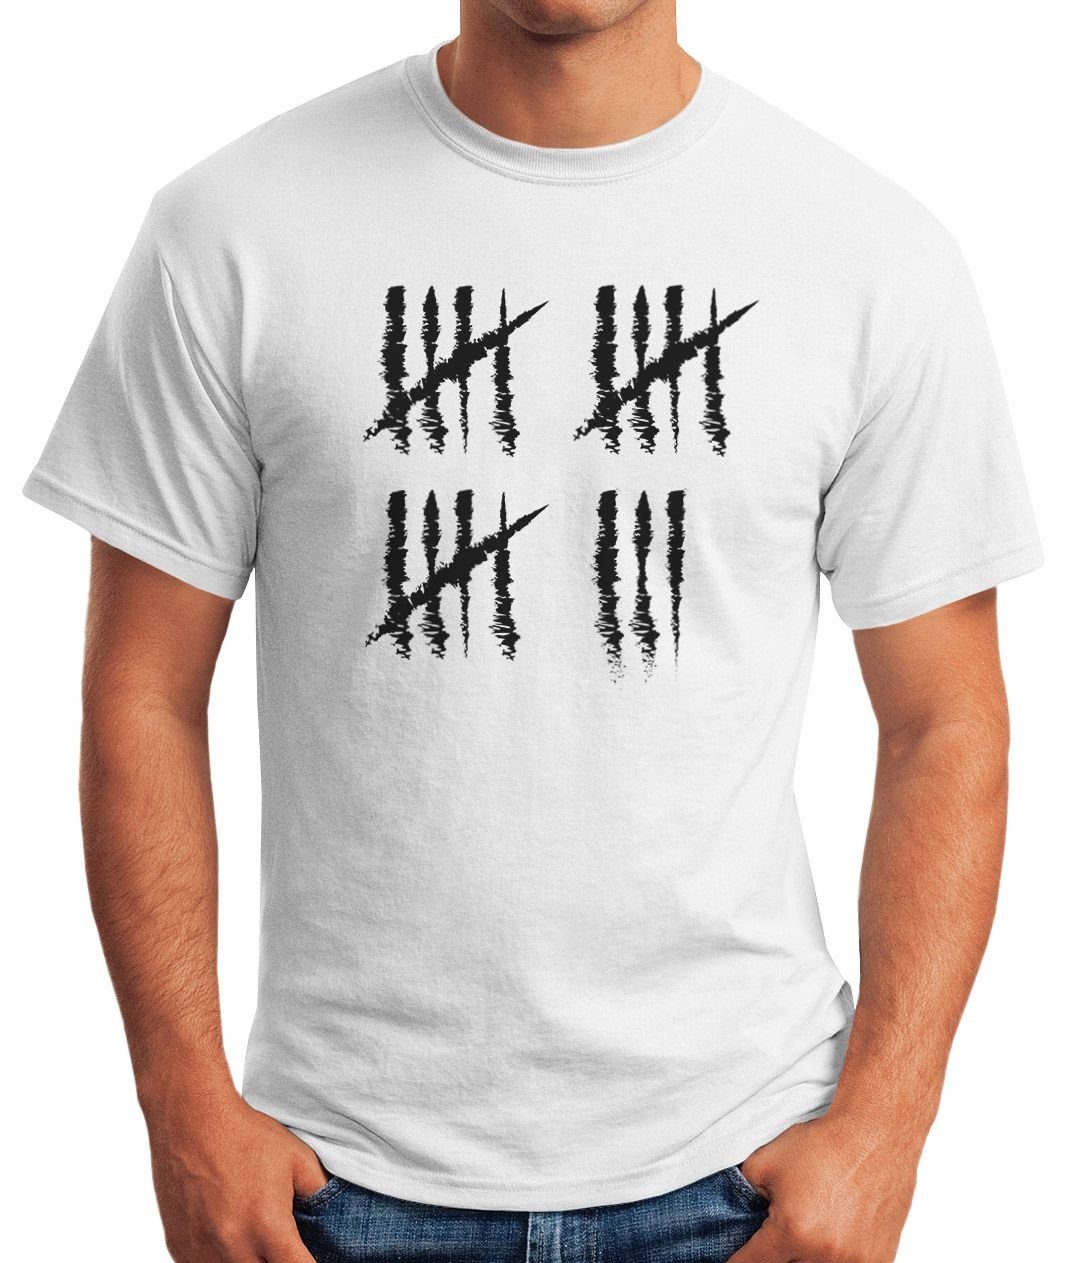 Jubiläum Fun-Shirt 18 T-Shirt Object] Striche [object Geburtstag Strichliste Jahrgang Print-Shirt Moonworks® weiß Print Alter Geschenk mit MoonWorks Herren